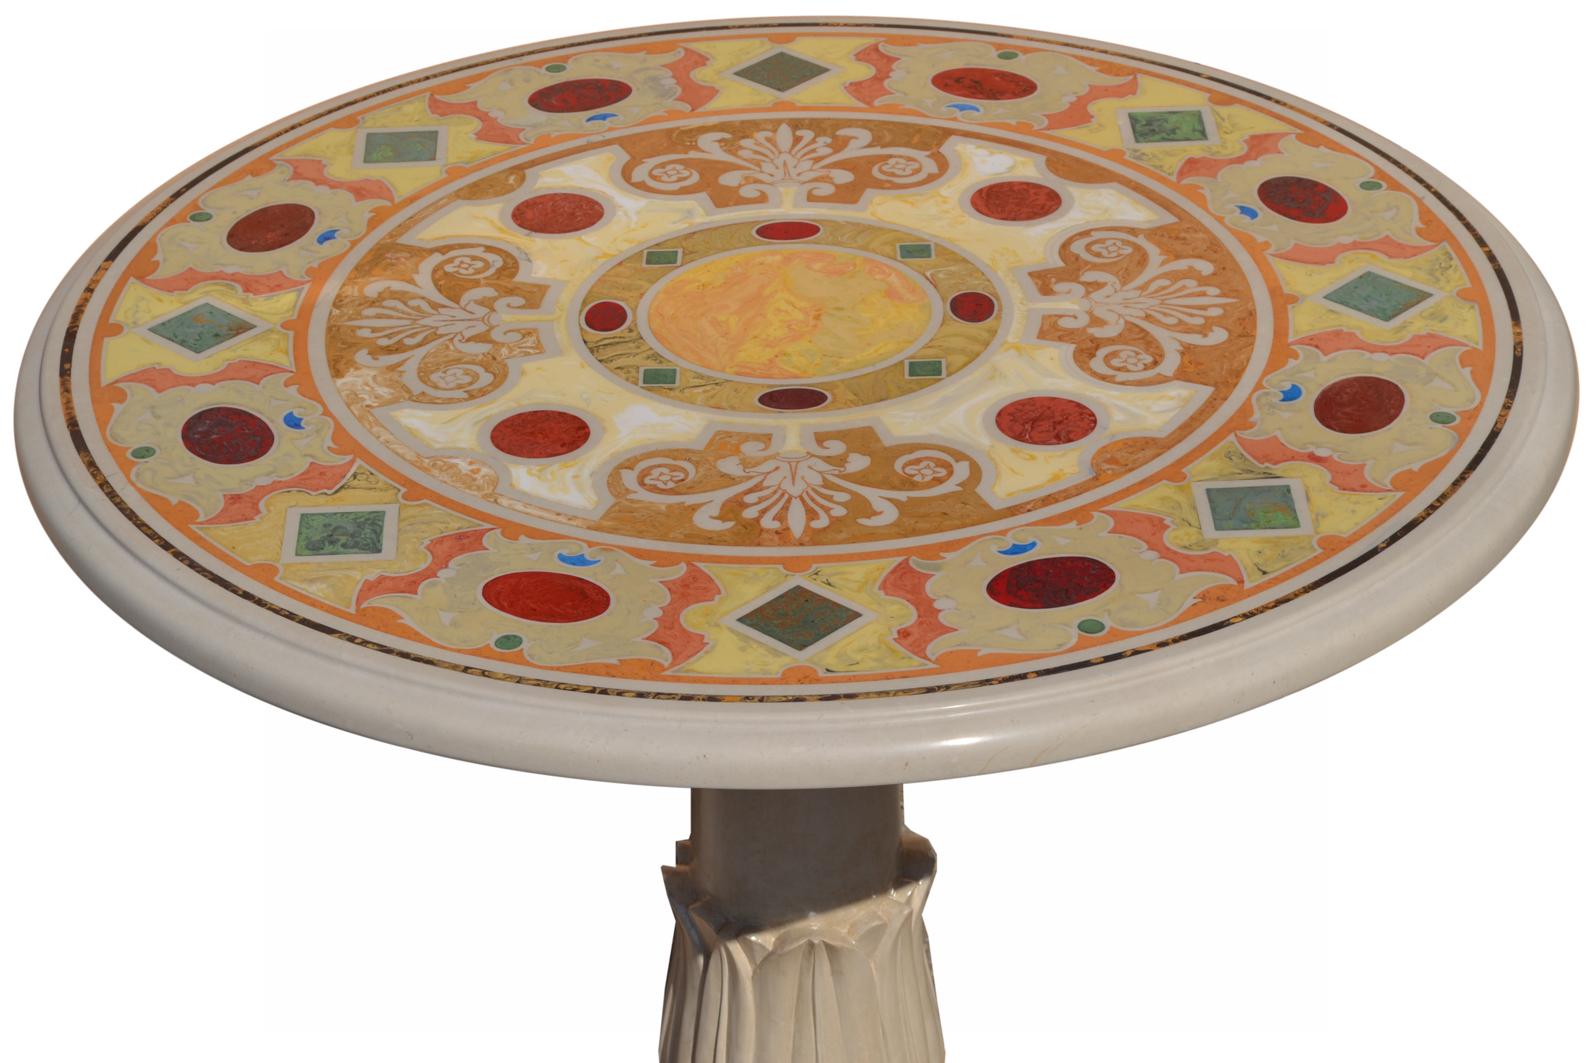 Runder Esstisch aus cremefarbenem Marmor oder Gueridon-Tisch
Größe: diam. 80 cm h. 74
 Zoll 31,50 h. 29,13
Dieser Tisch wurde von erfahrenen Künstlern in alter Technik handgefertigt. 
der Scagliola-Kunstintarsie und lässt sich vom klassischen